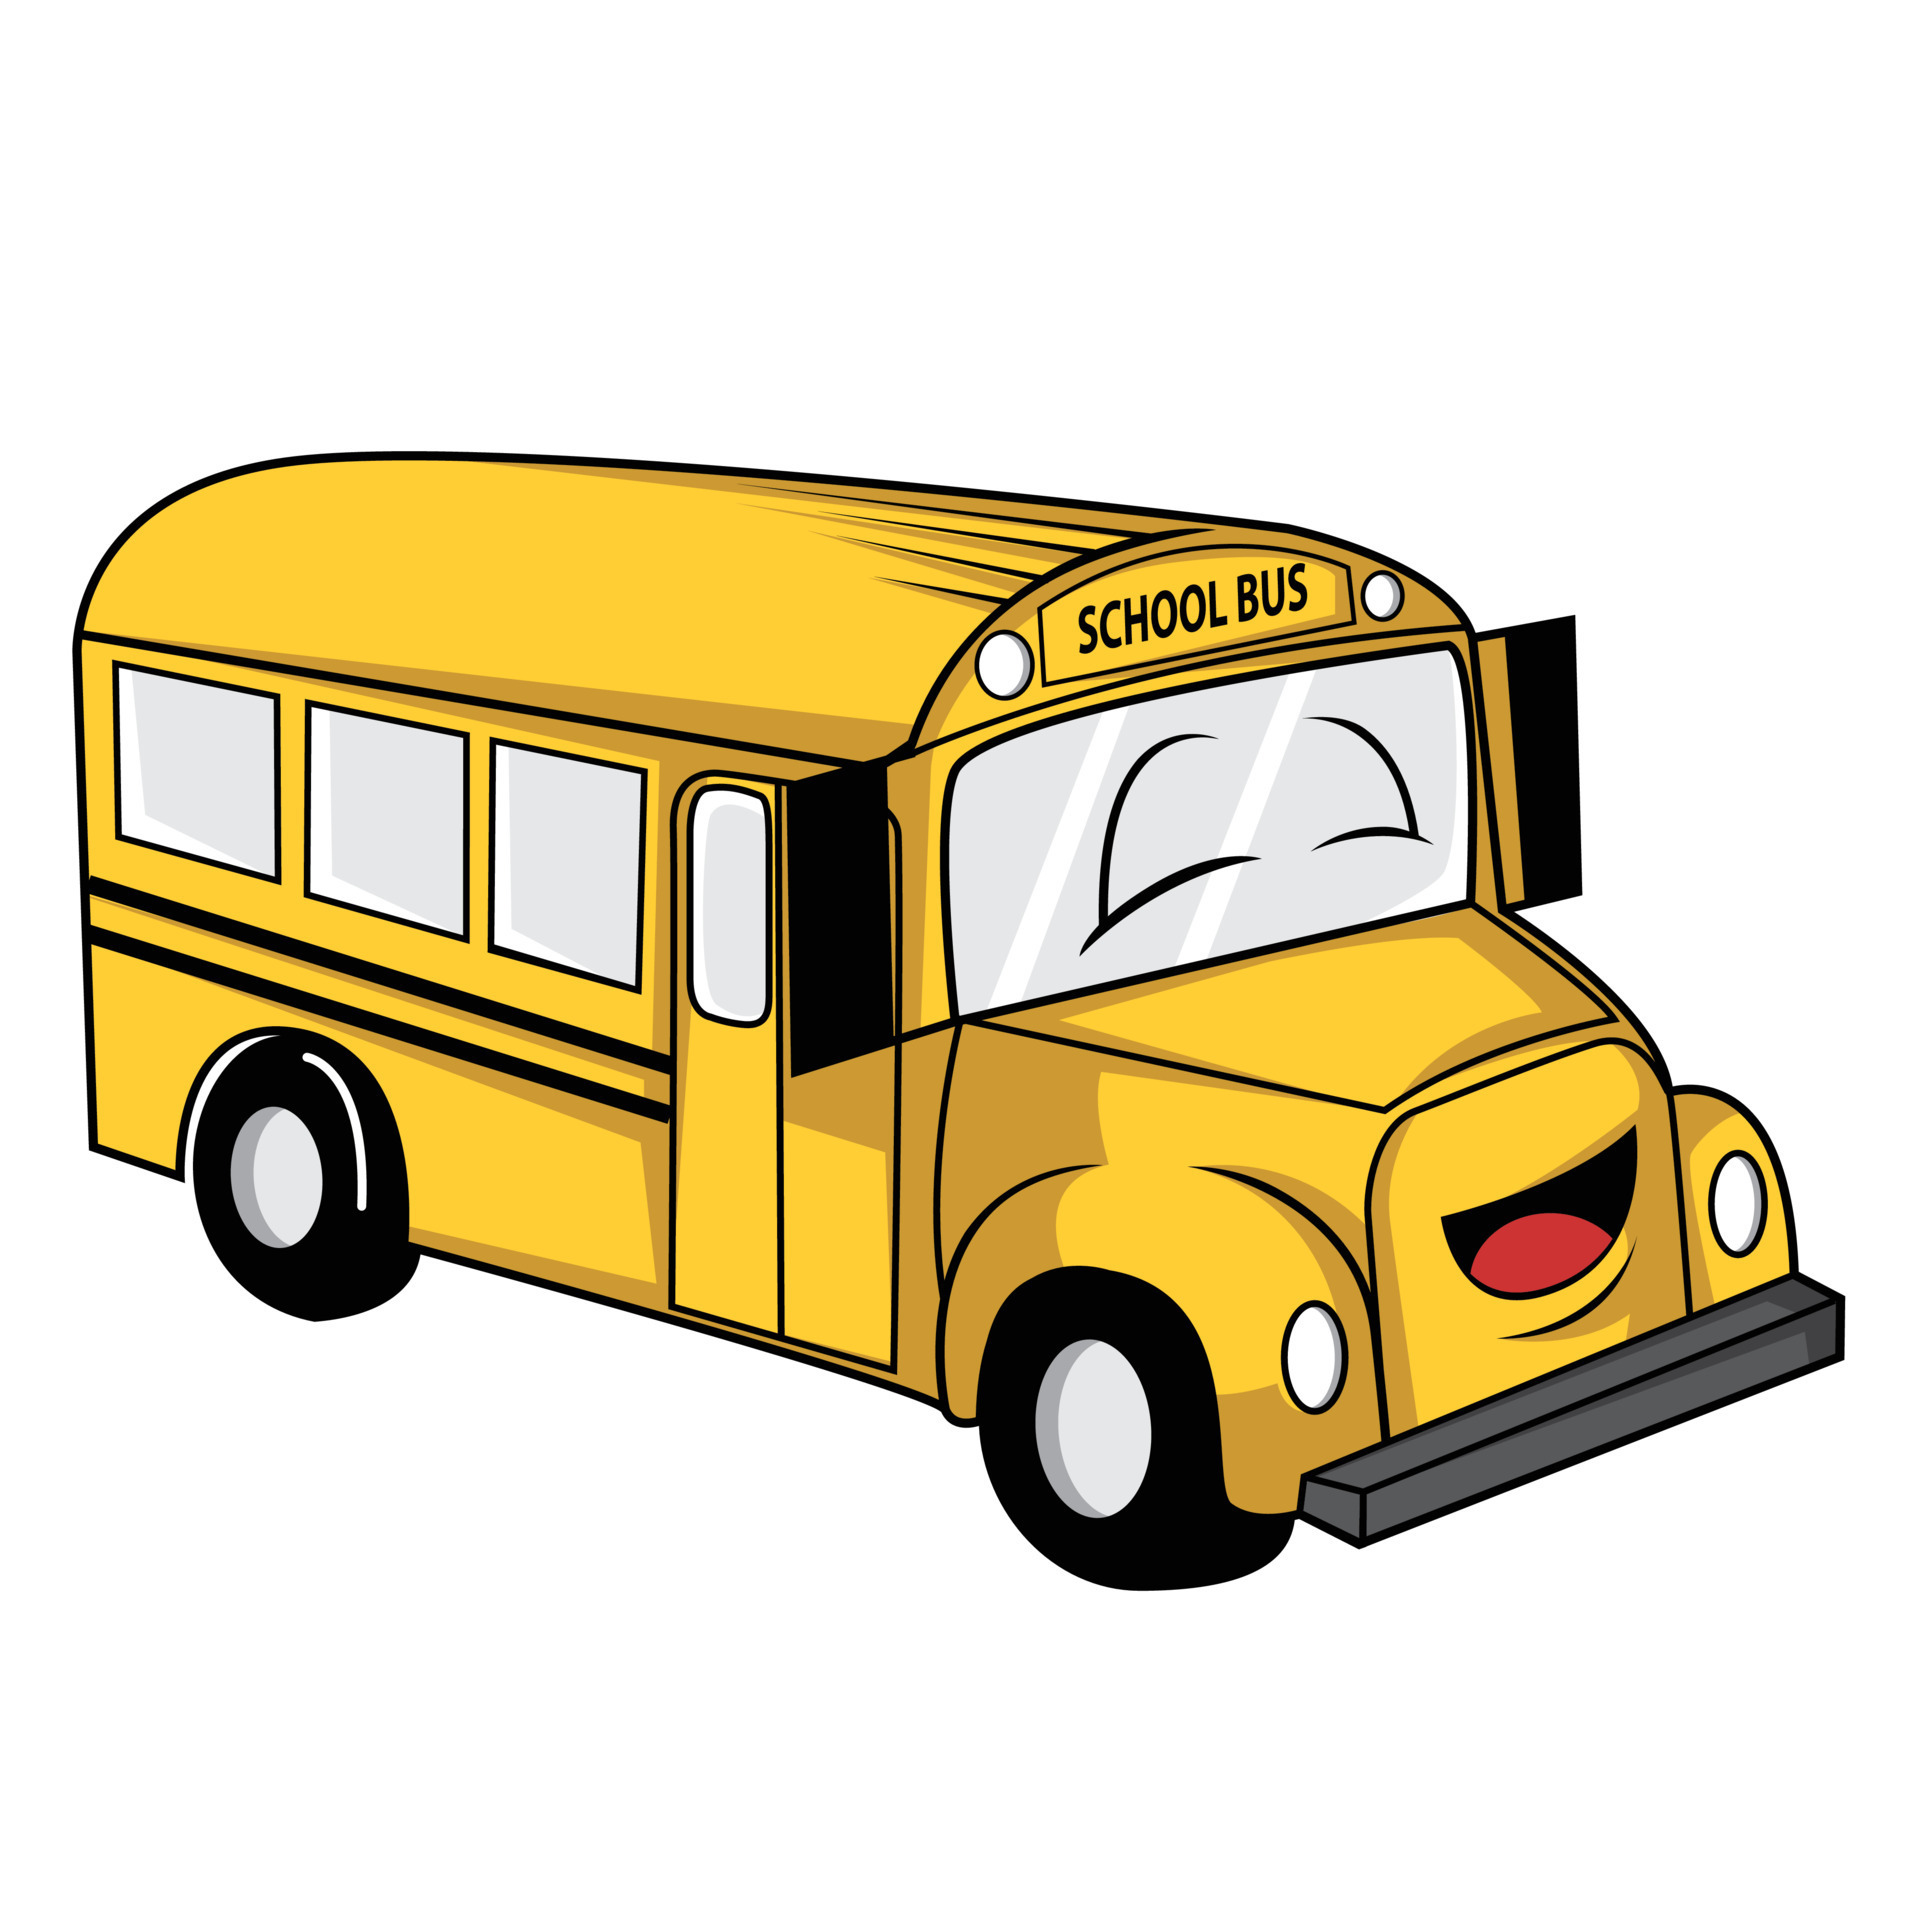 Xem hình vẽ hài hước về xe buýt đưa đón học sinh trên trang phục vụ giáo dục. Bạn sẽ cười nghiêng ngả vì những hành động đáng yêu của nhân vật chính trong câu chuyện.